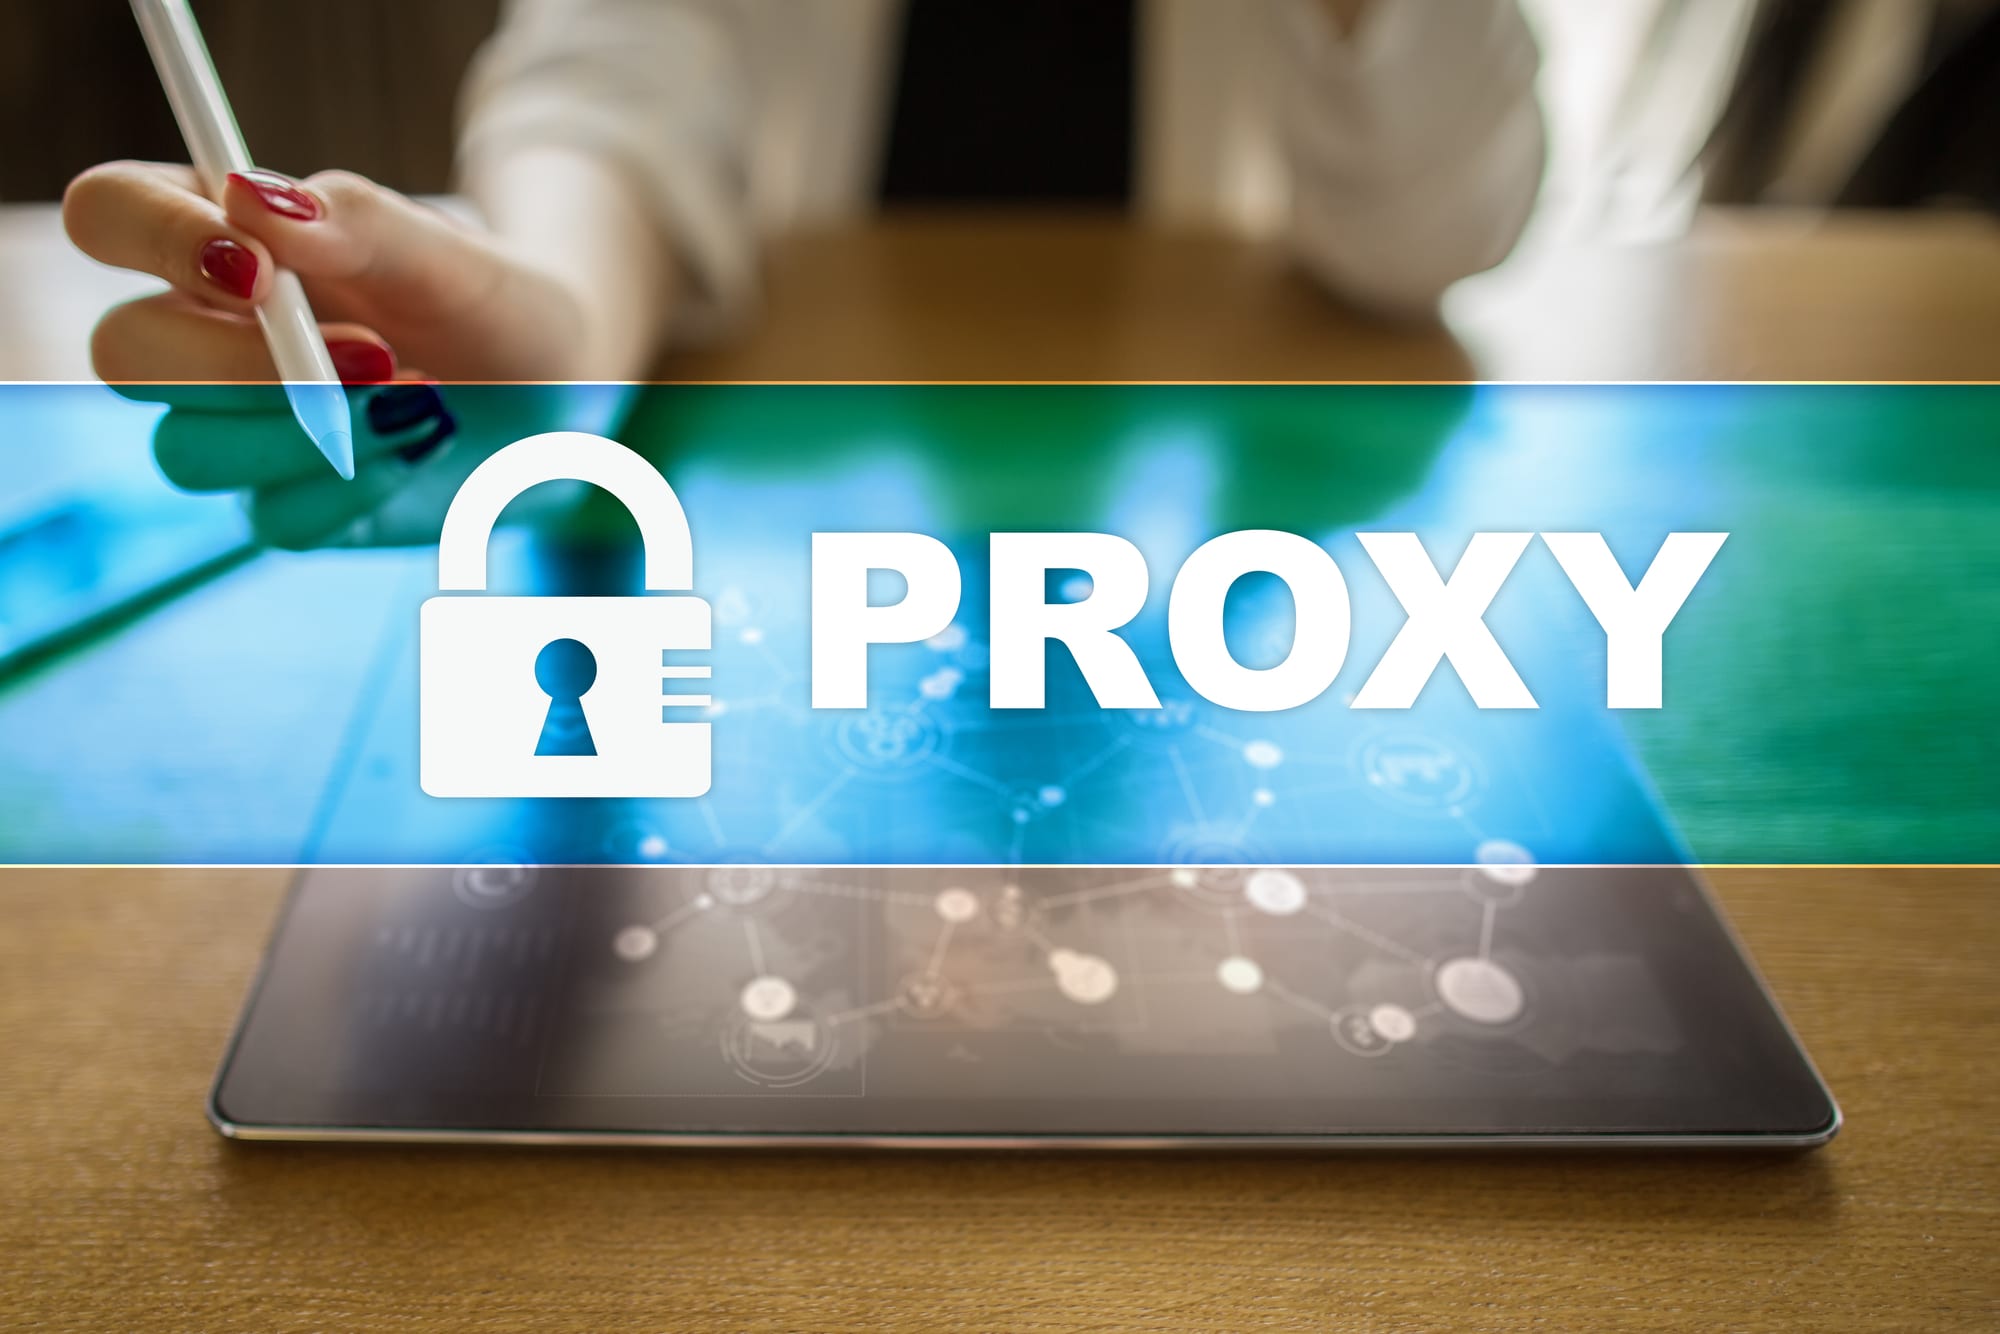 Ters Proxy ile İleri Proxy'nin Karşılaştırılması: Varyansların Ortaya Çıkarılması